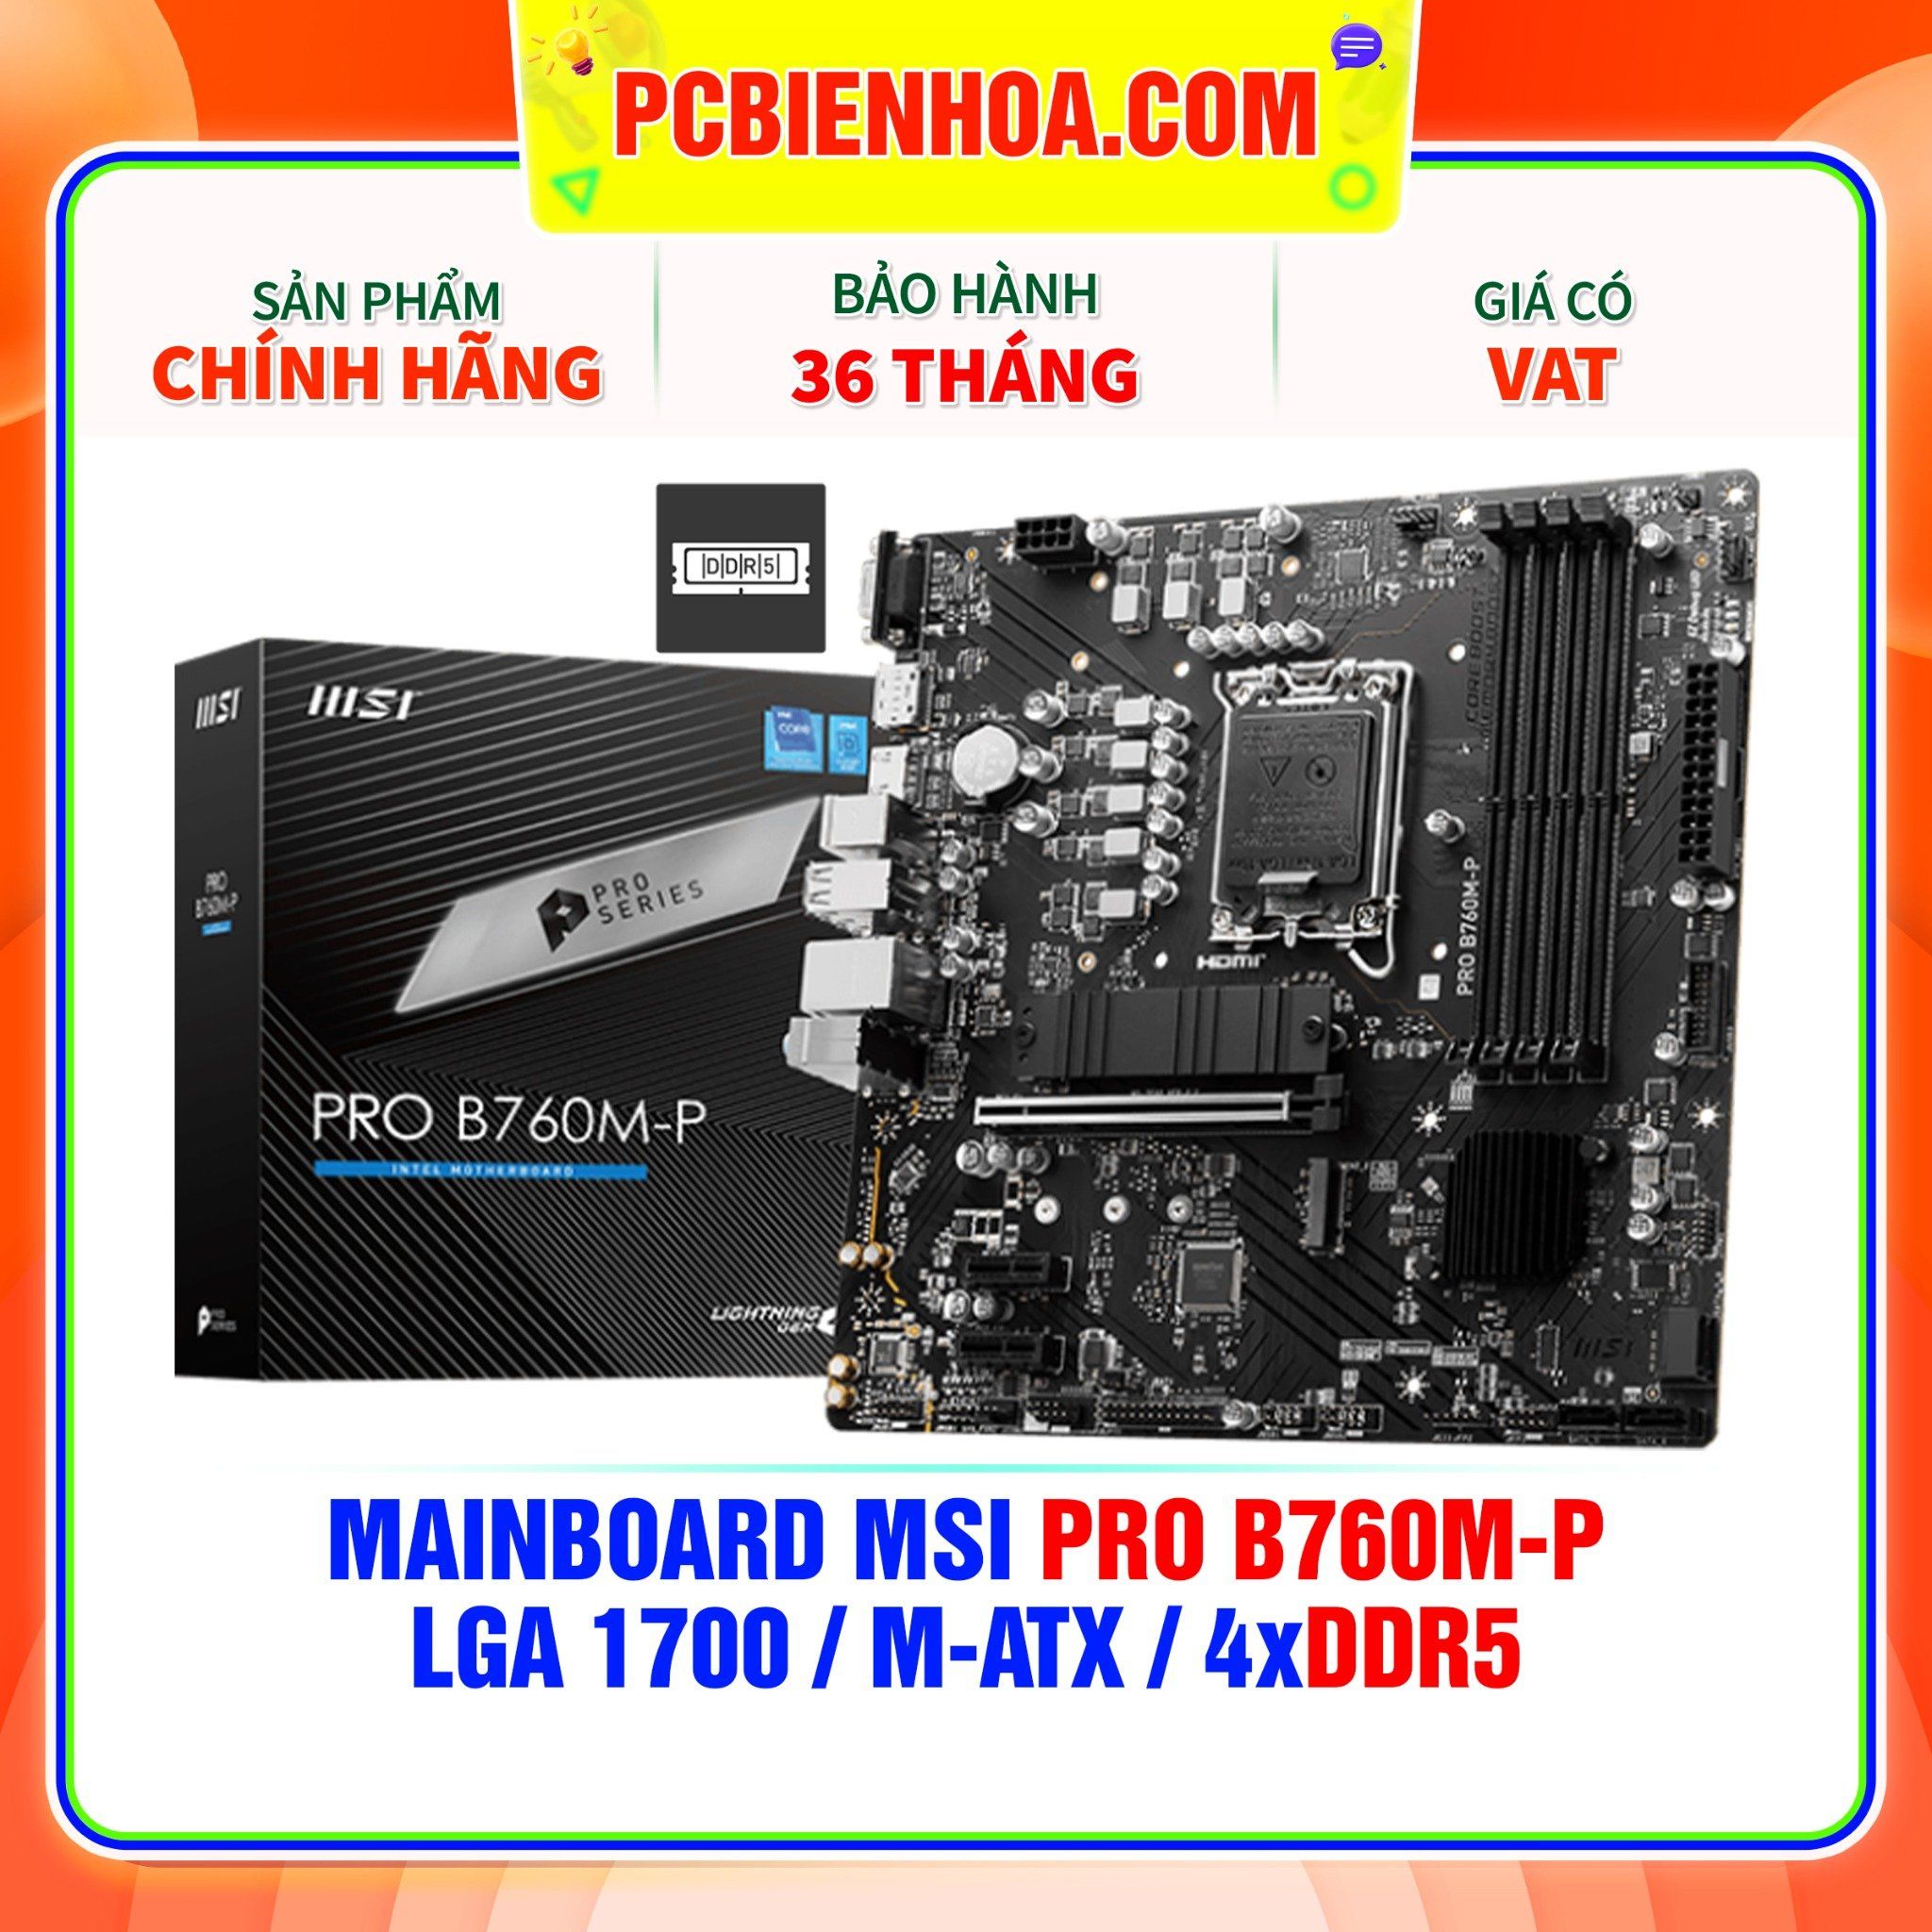  DDR5 - MAINBOARD MSI PRO B760M-P ( LGA1700 / M-ATX / 4xDDR5 ) 